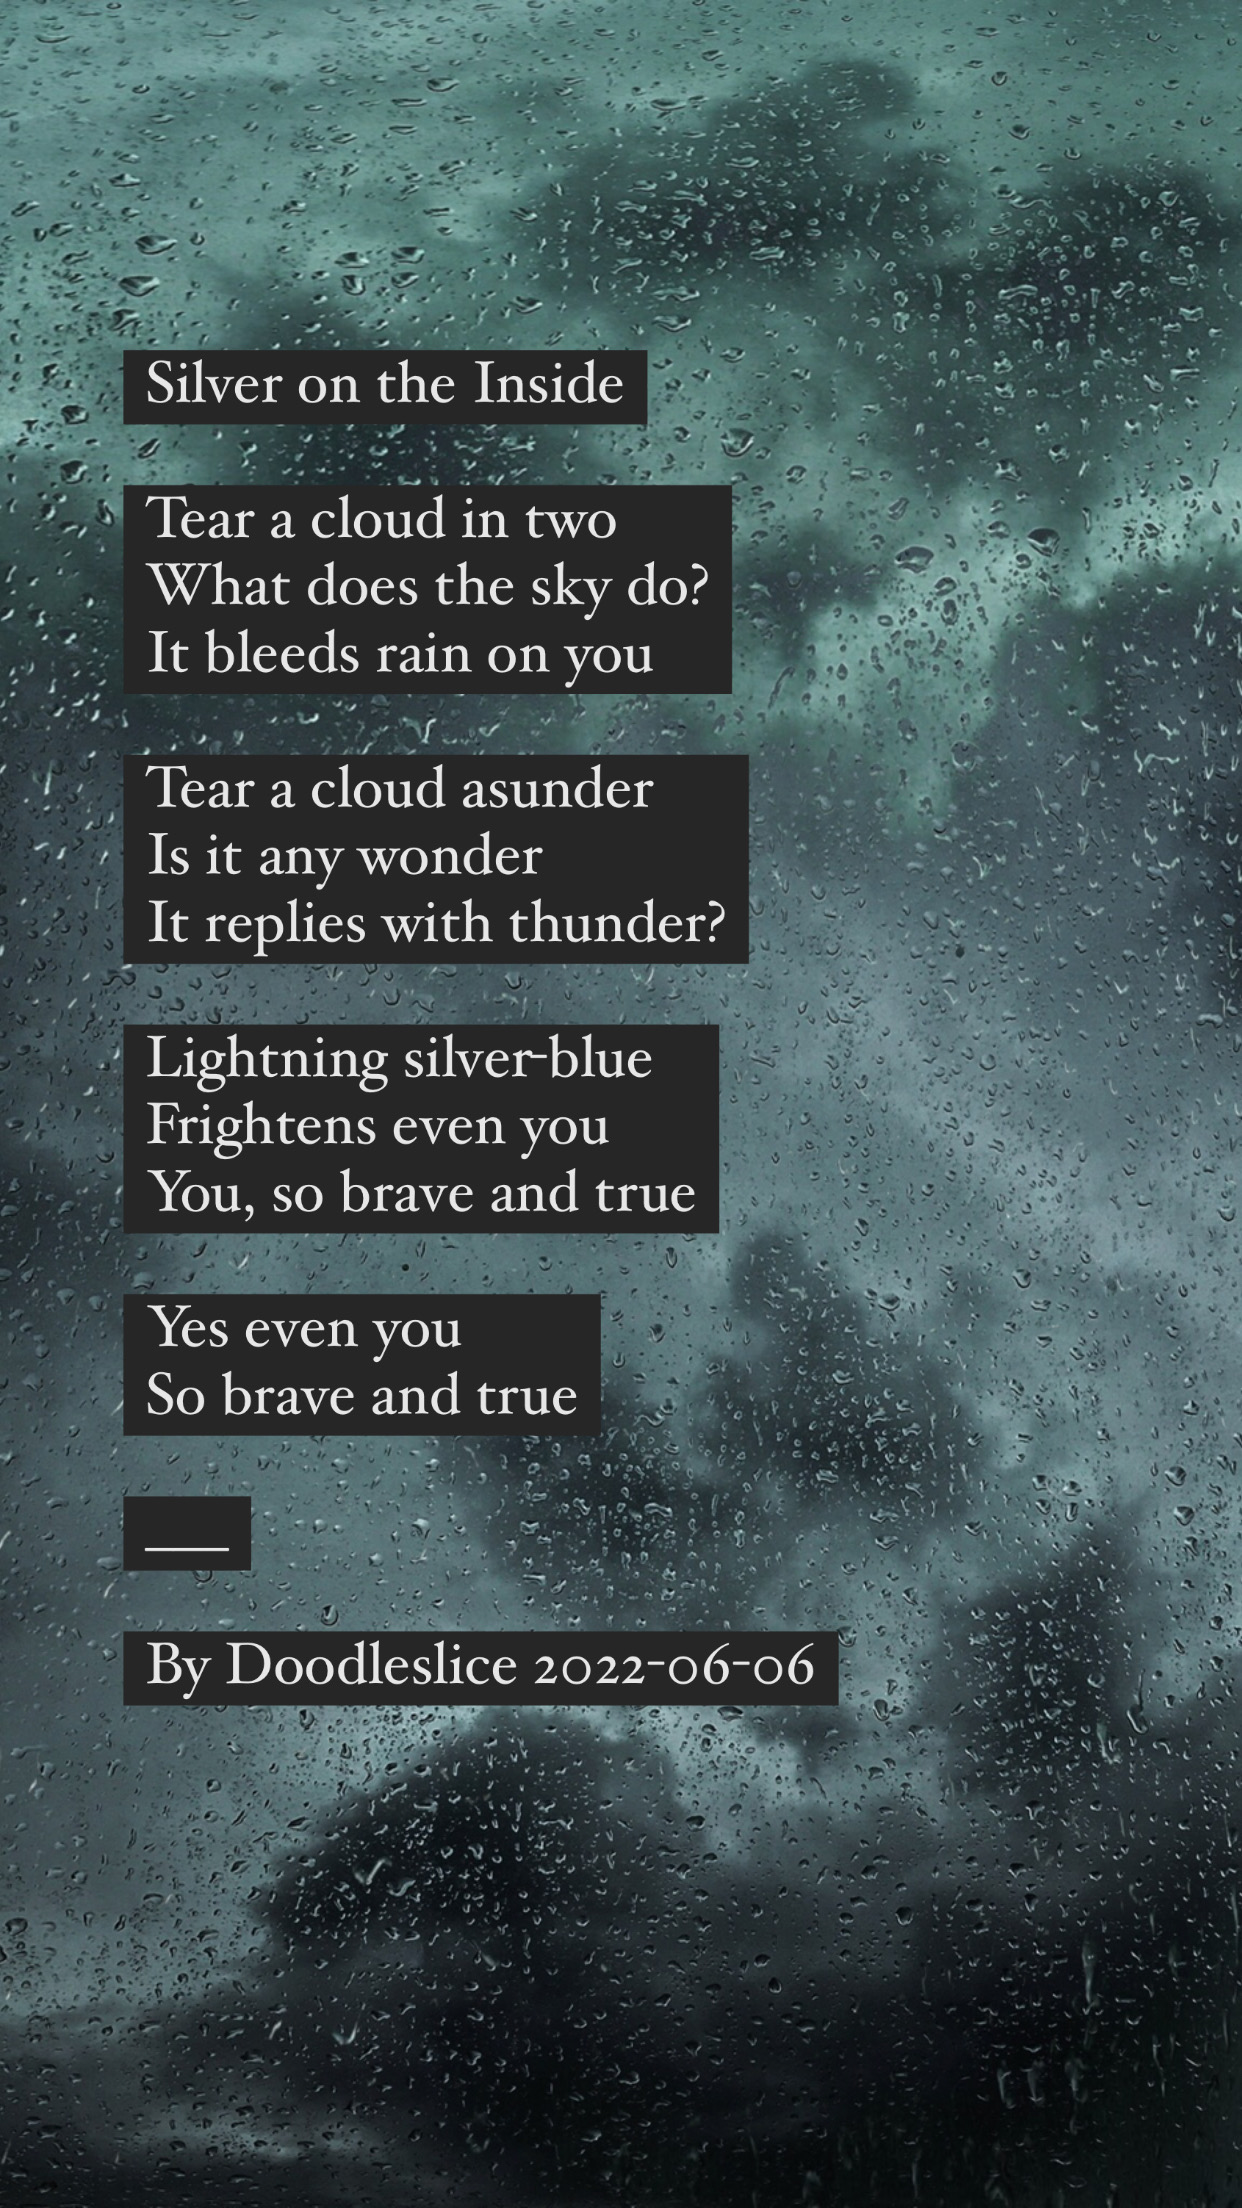 Silver on the Inside - Original poem by Doodleslice